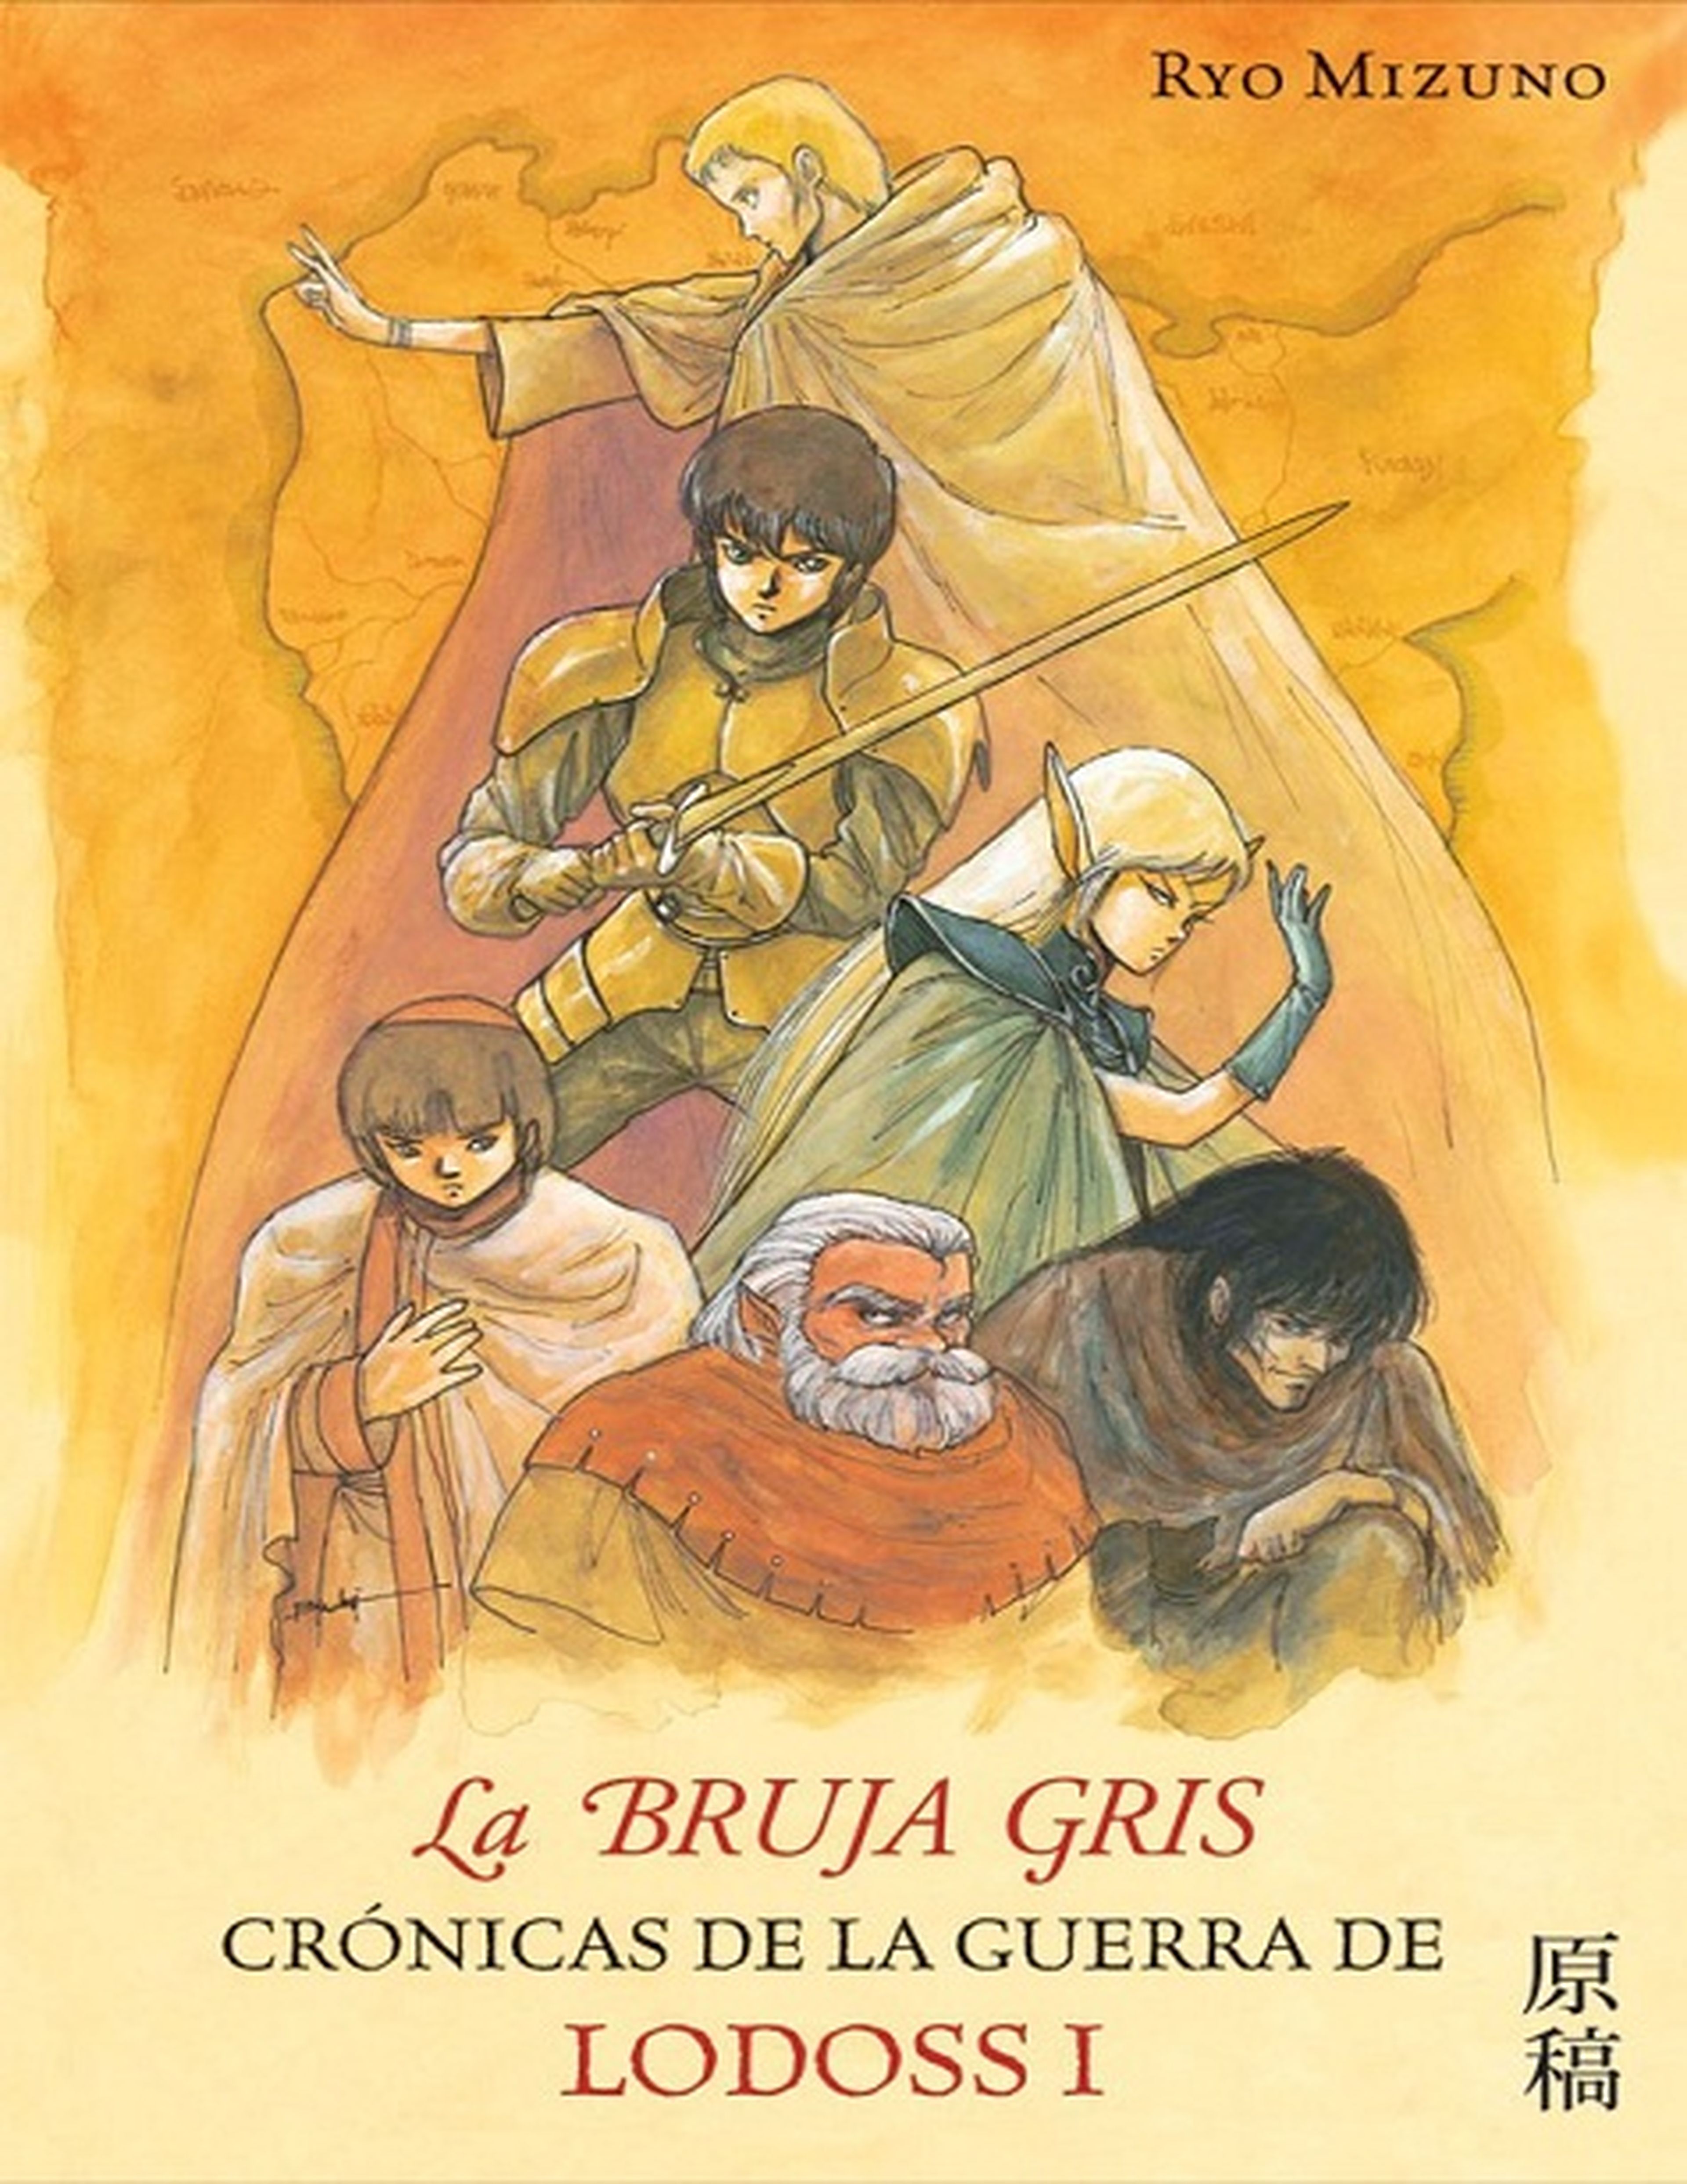 Reedición de Crónicas de la Guerra de Lodoss: La Bruja Gris